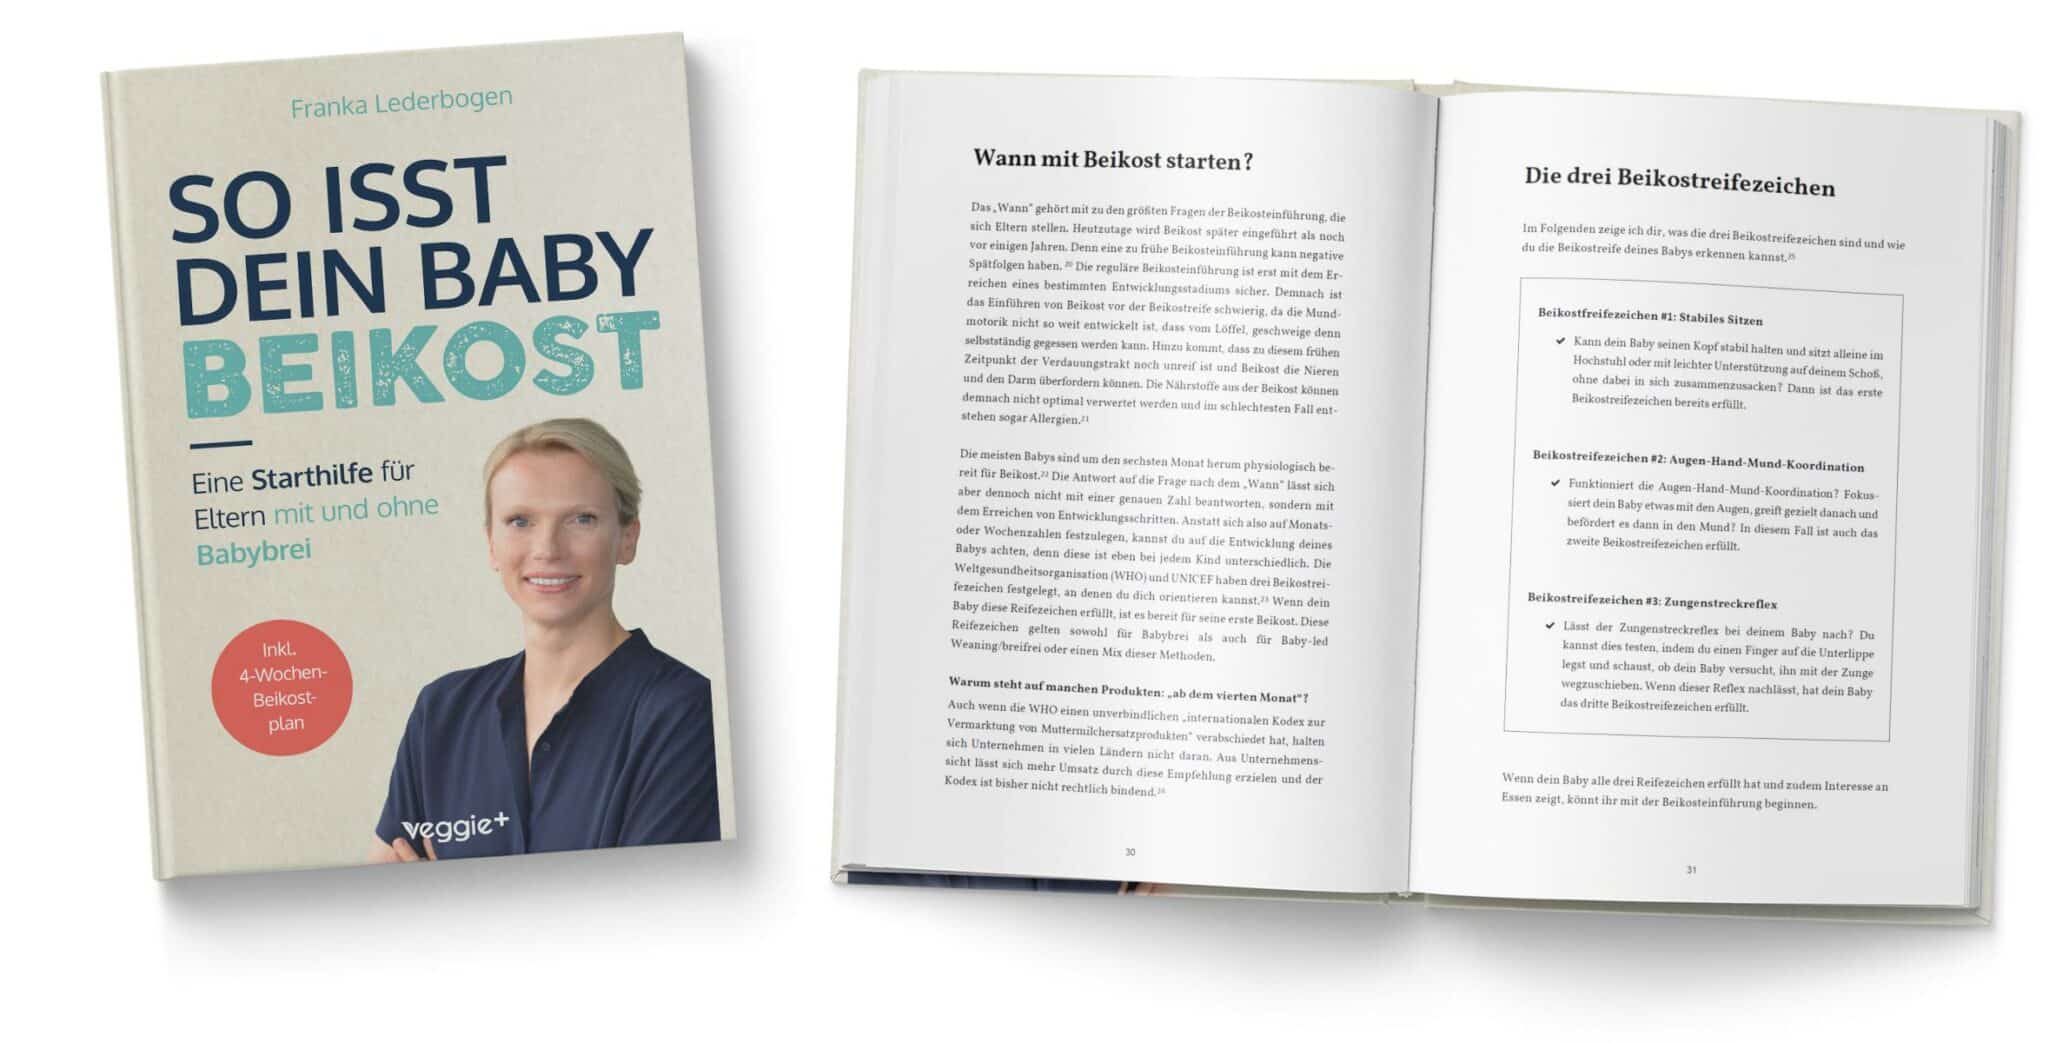 So isst dein Baby Beikost: Eine Starthilfe für Eltern – mit und ohne Babybrei (Das Grundlagenbuch für den Beikoststart, inklusive 4-Wochen-Anleitung) von Franka Lederbogen im veggie + Verlag